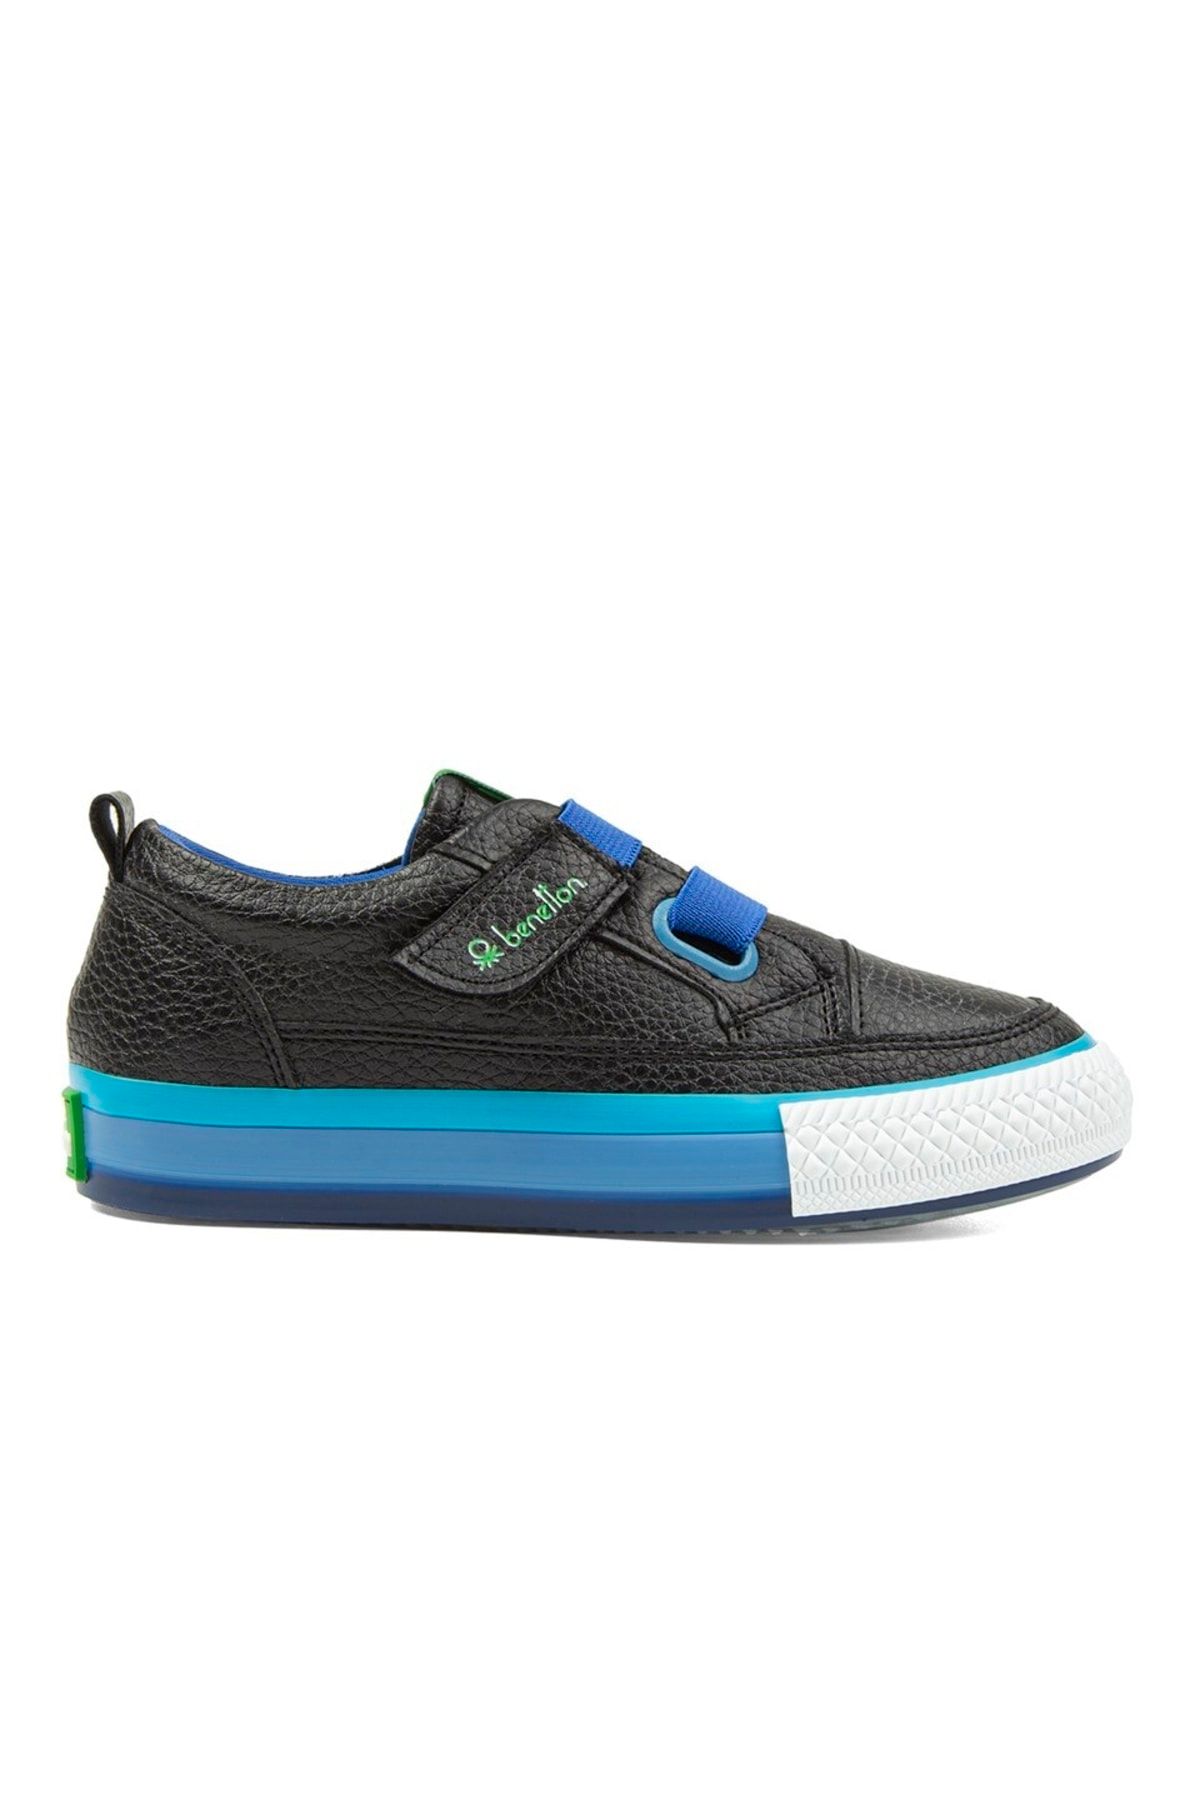 Benetton ® | BN-30445 - 3394 Siyah Mavi - Çocuk Spor Ayakkabı